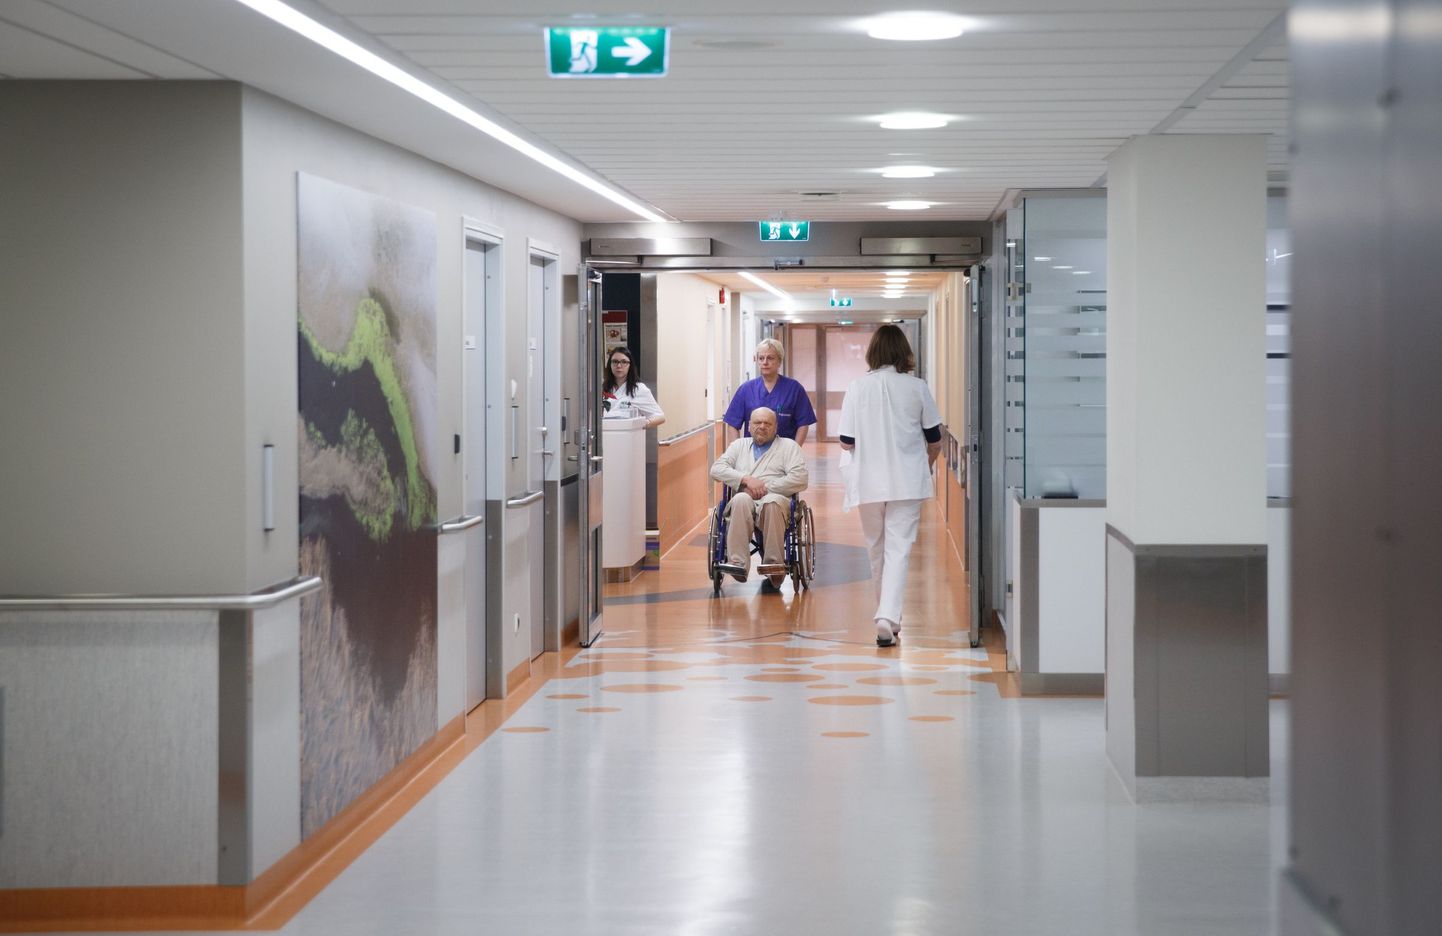 Eesti suurima haigla, Põhja-Eesti regionaalhaigla, koridor.